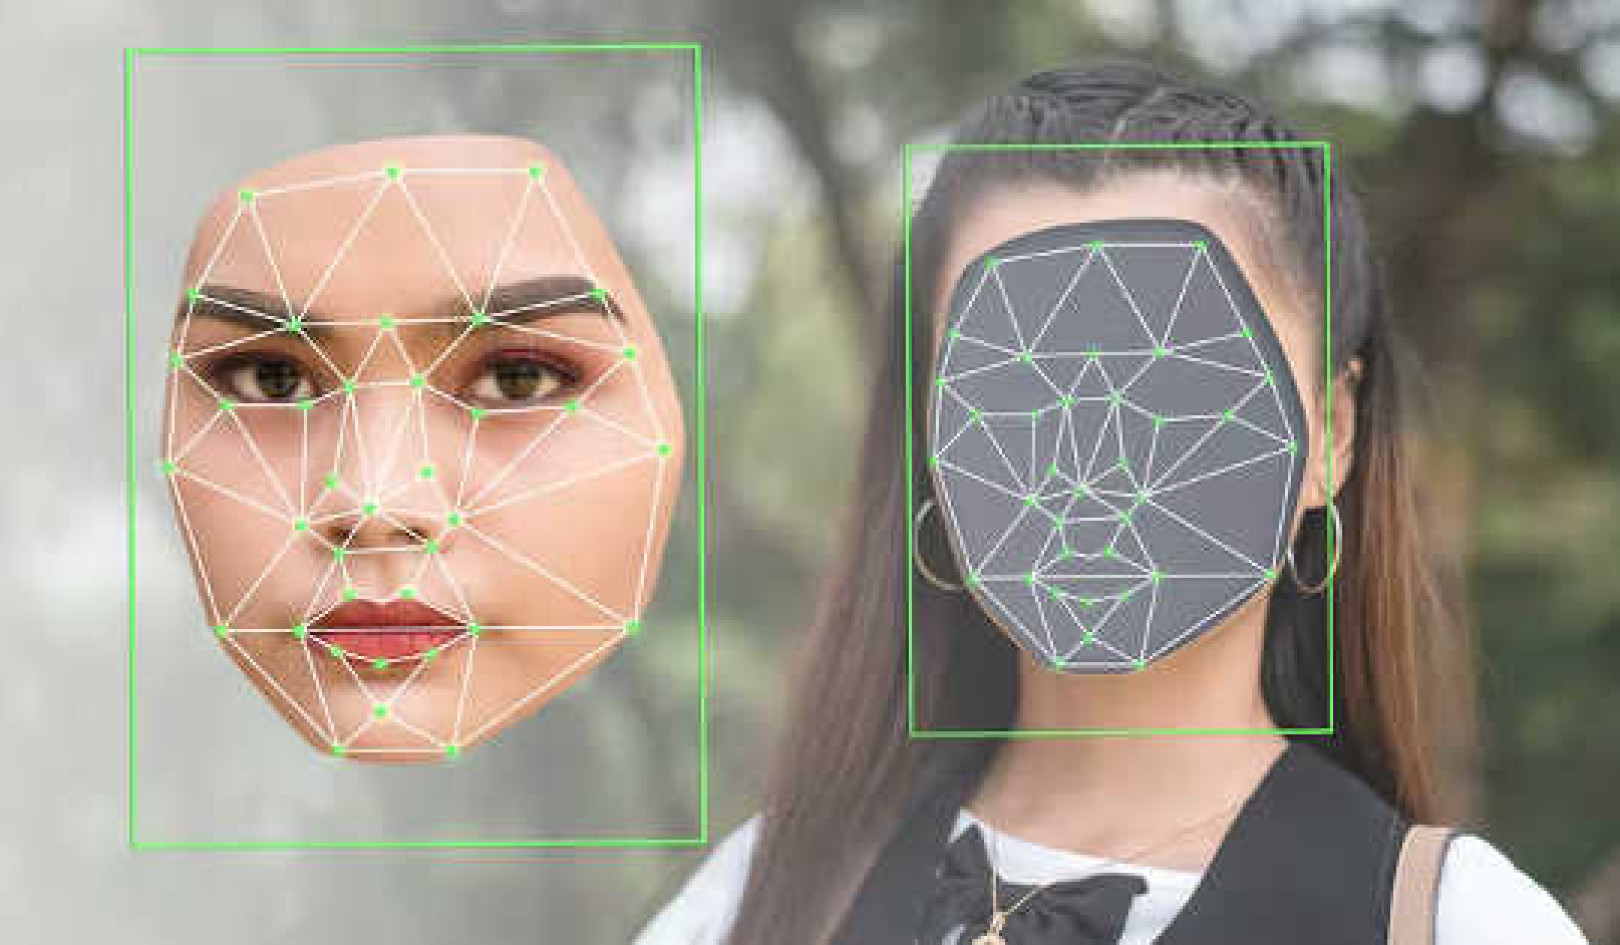 L'uso di deepfake può seminare dubbi, creando confusione e sfiducia negli spettatori